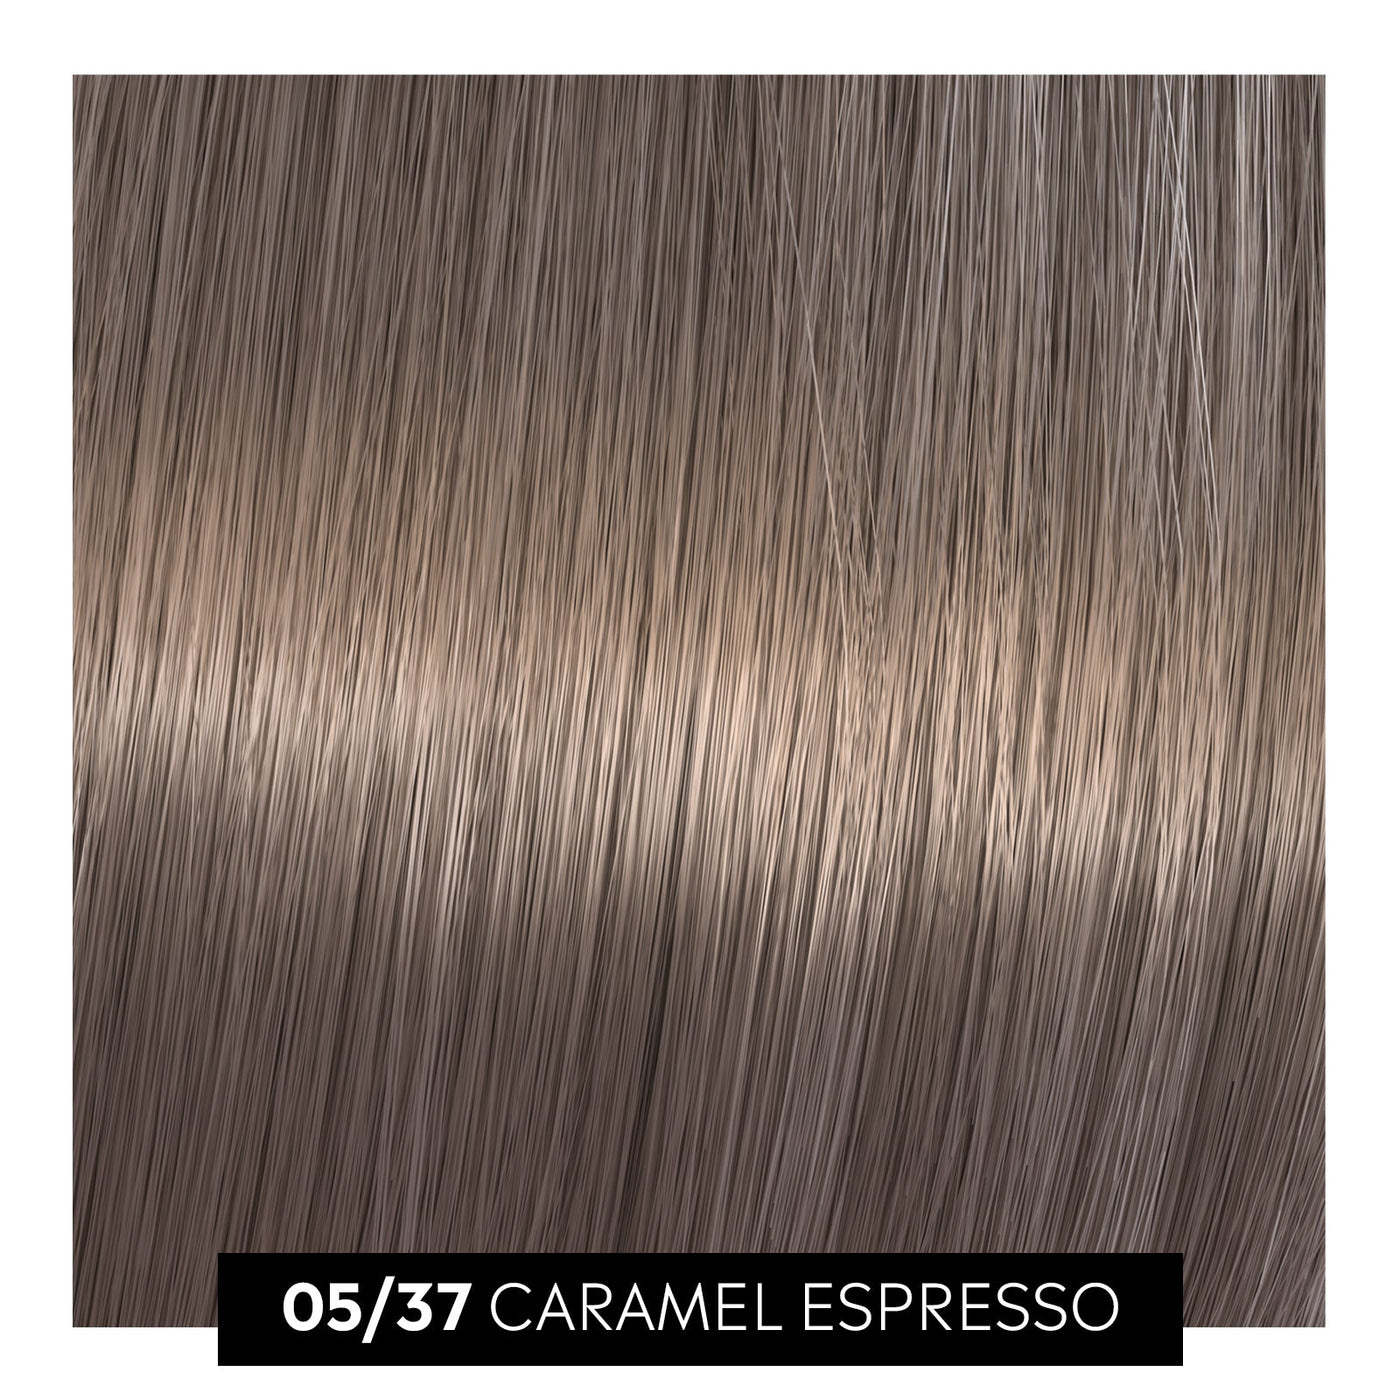 05/37 caramel espresso